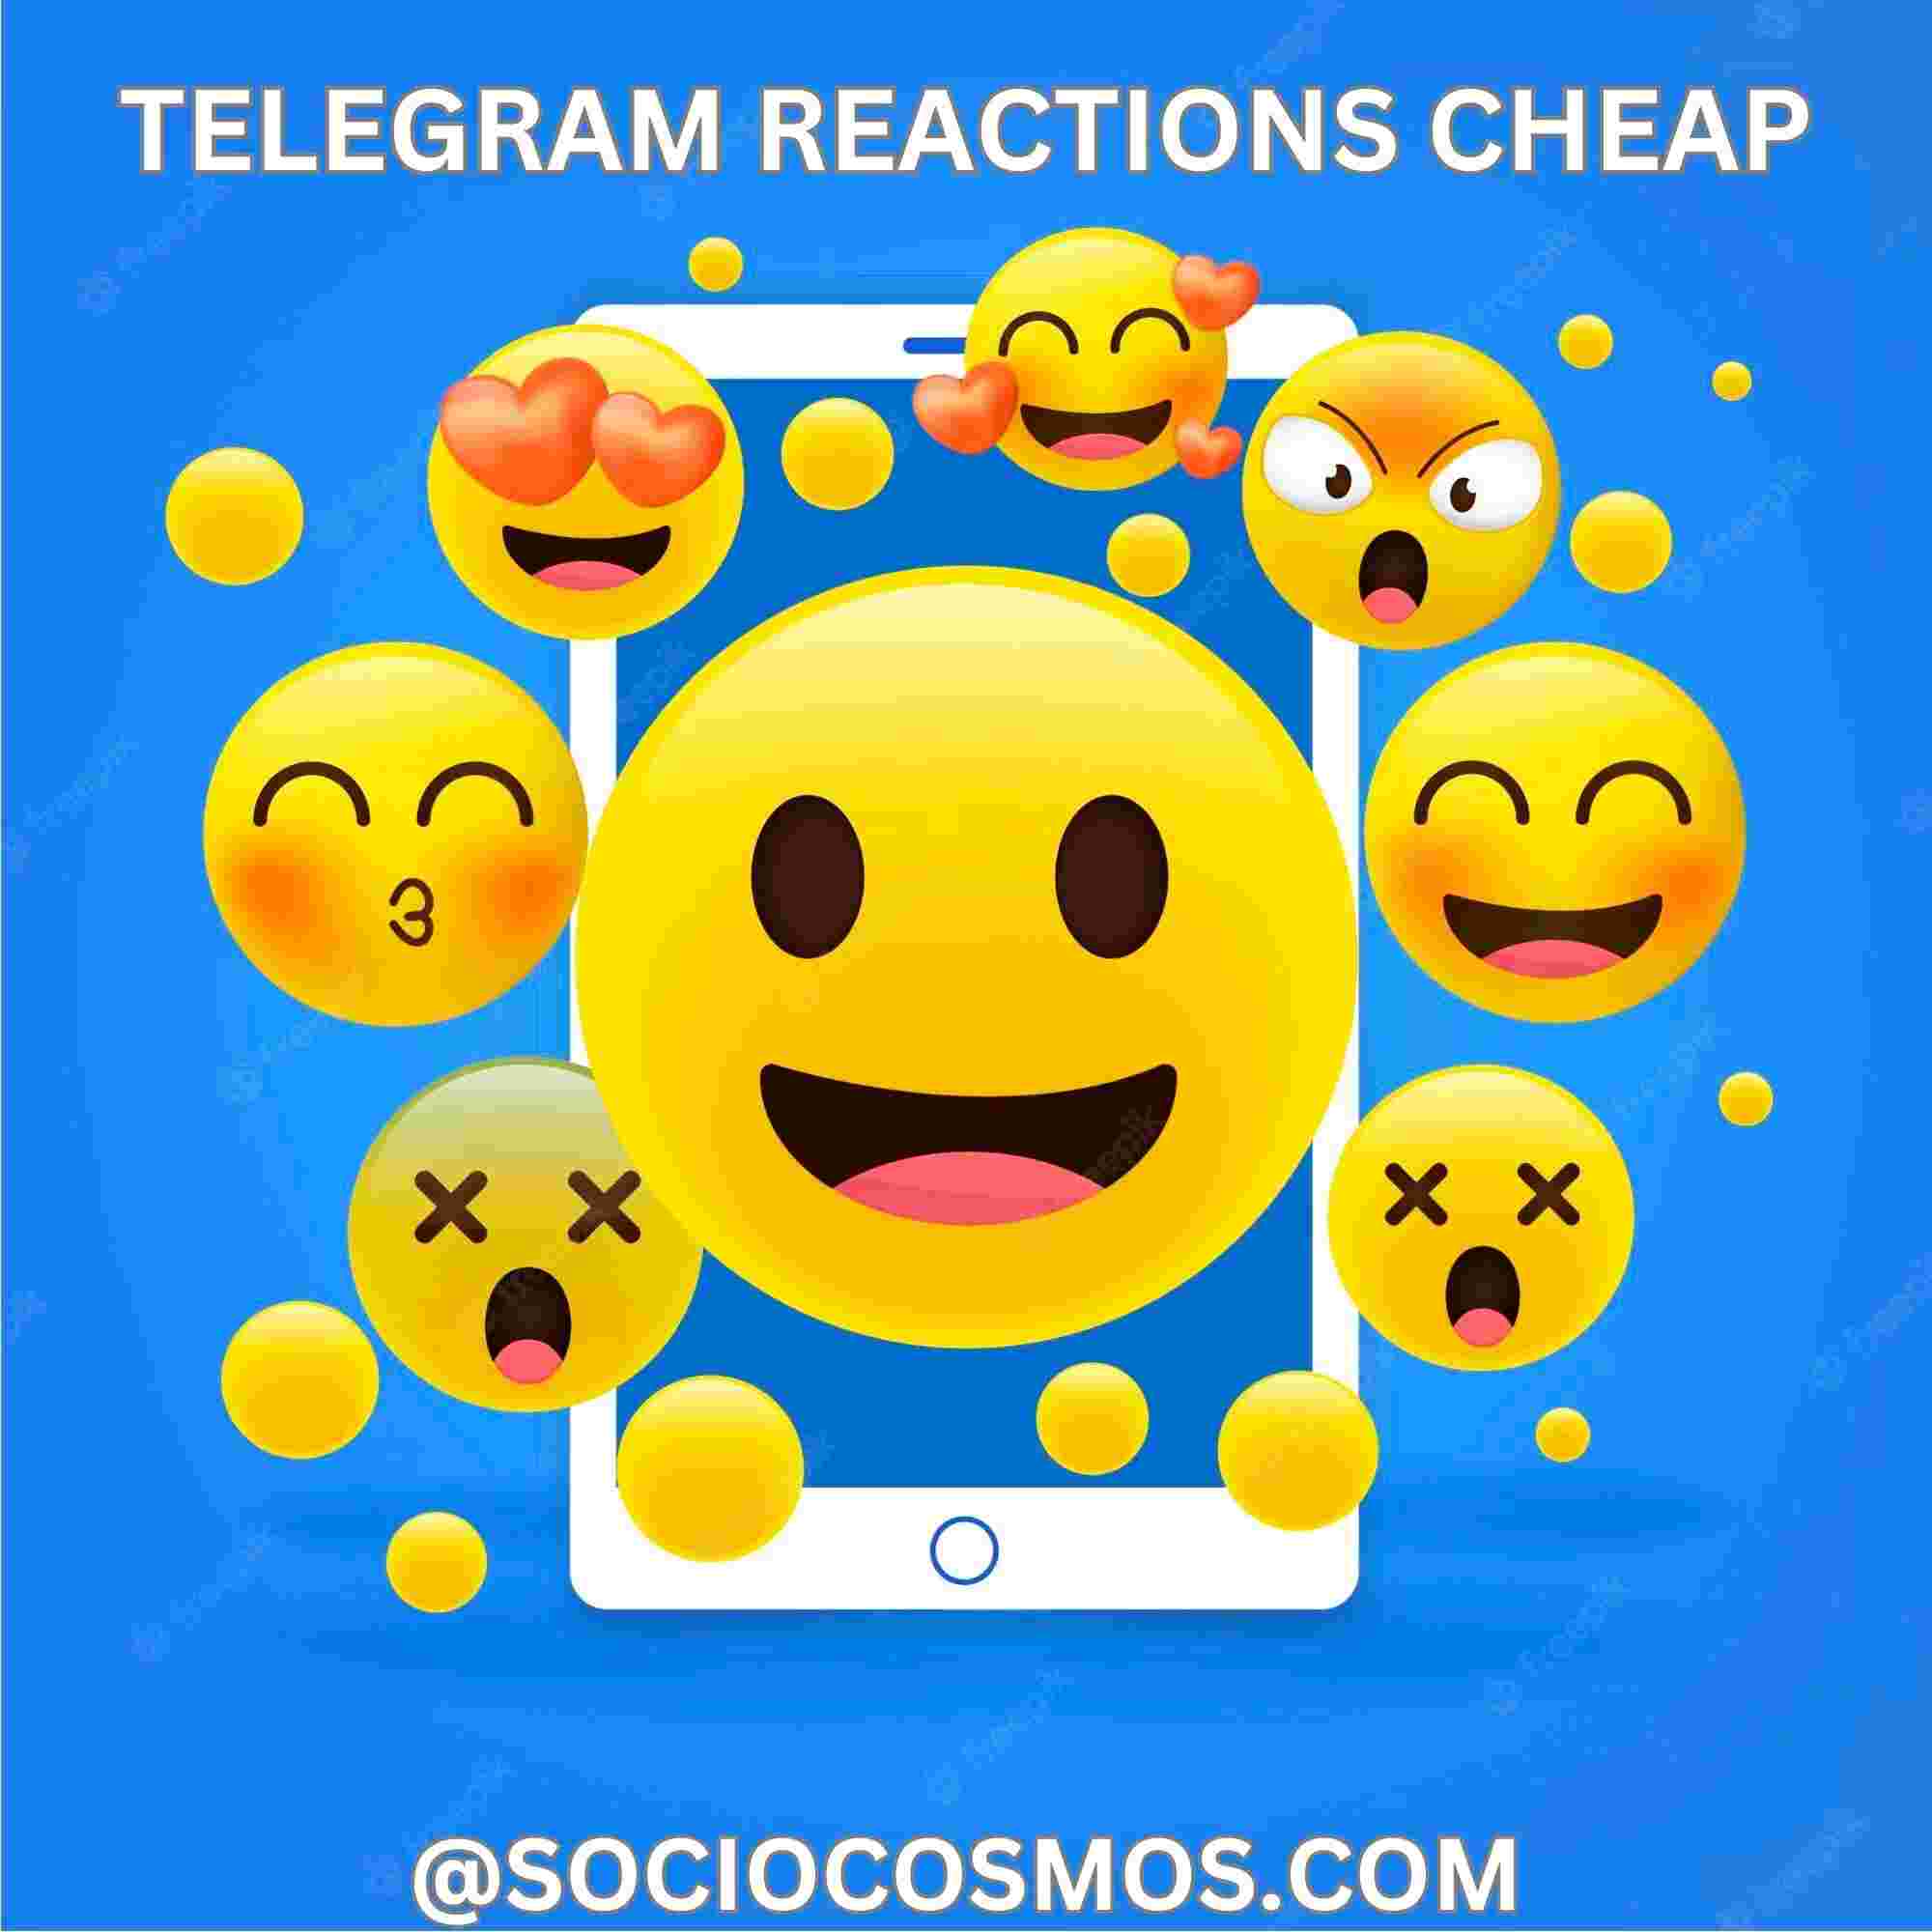 TELEGRAM REACTIONS CHEAP